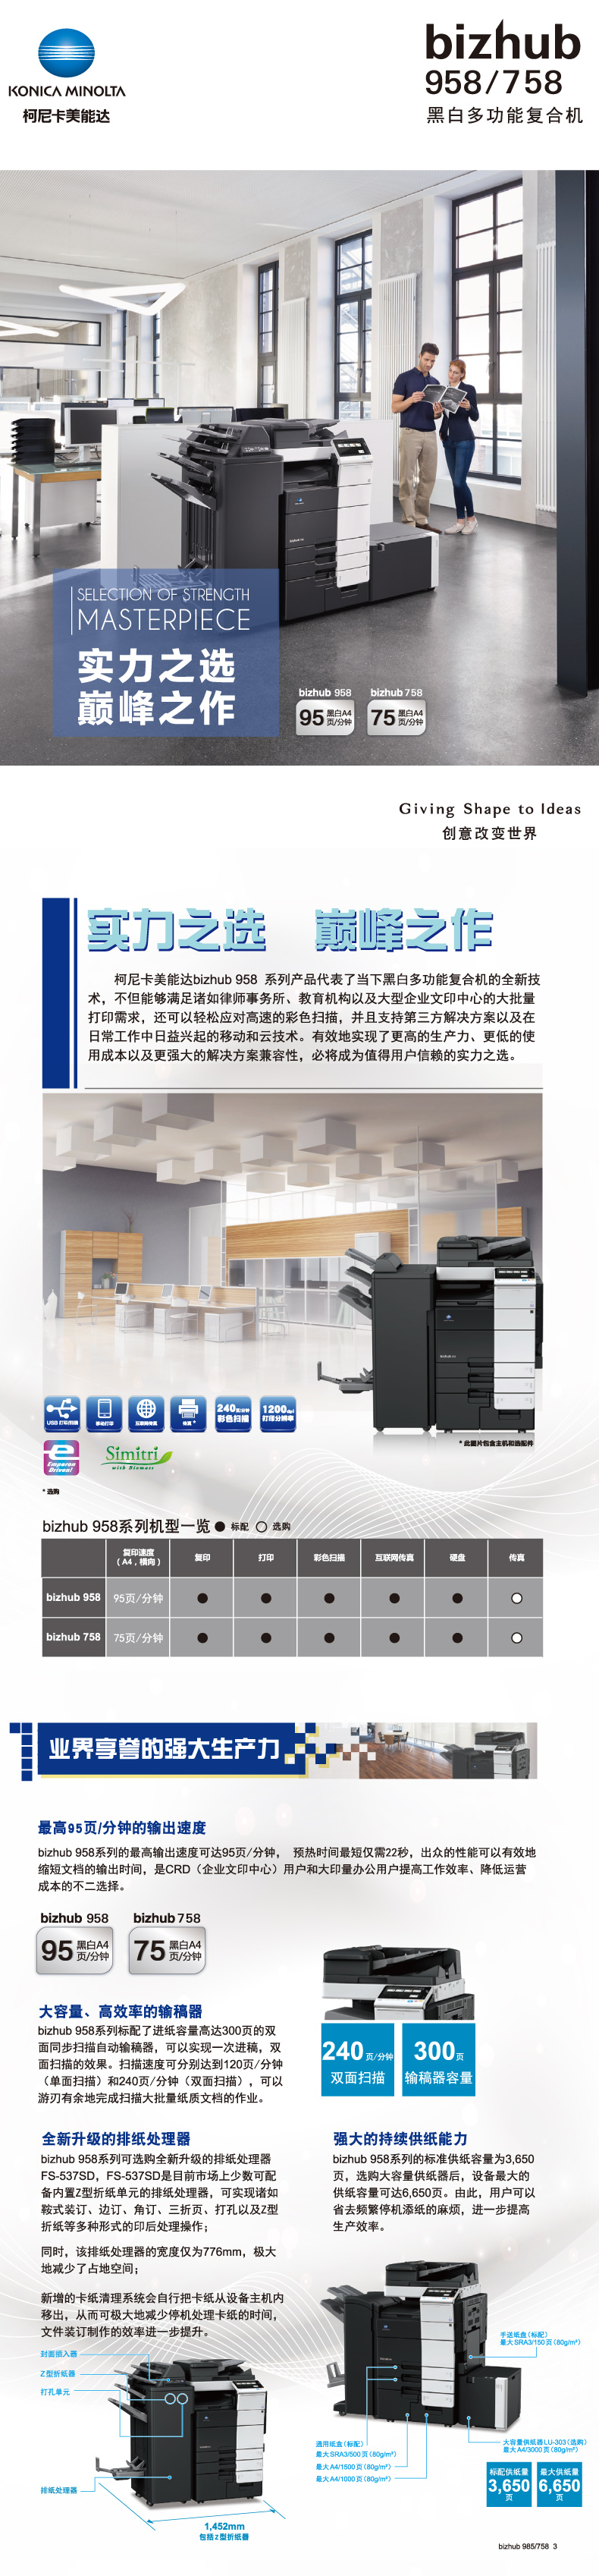 柯尼卡美能达(KONICA MINOLTA)bizhub 958A3黑白复合机 95页/分 打印复印扫描 输稿器 四纸盒